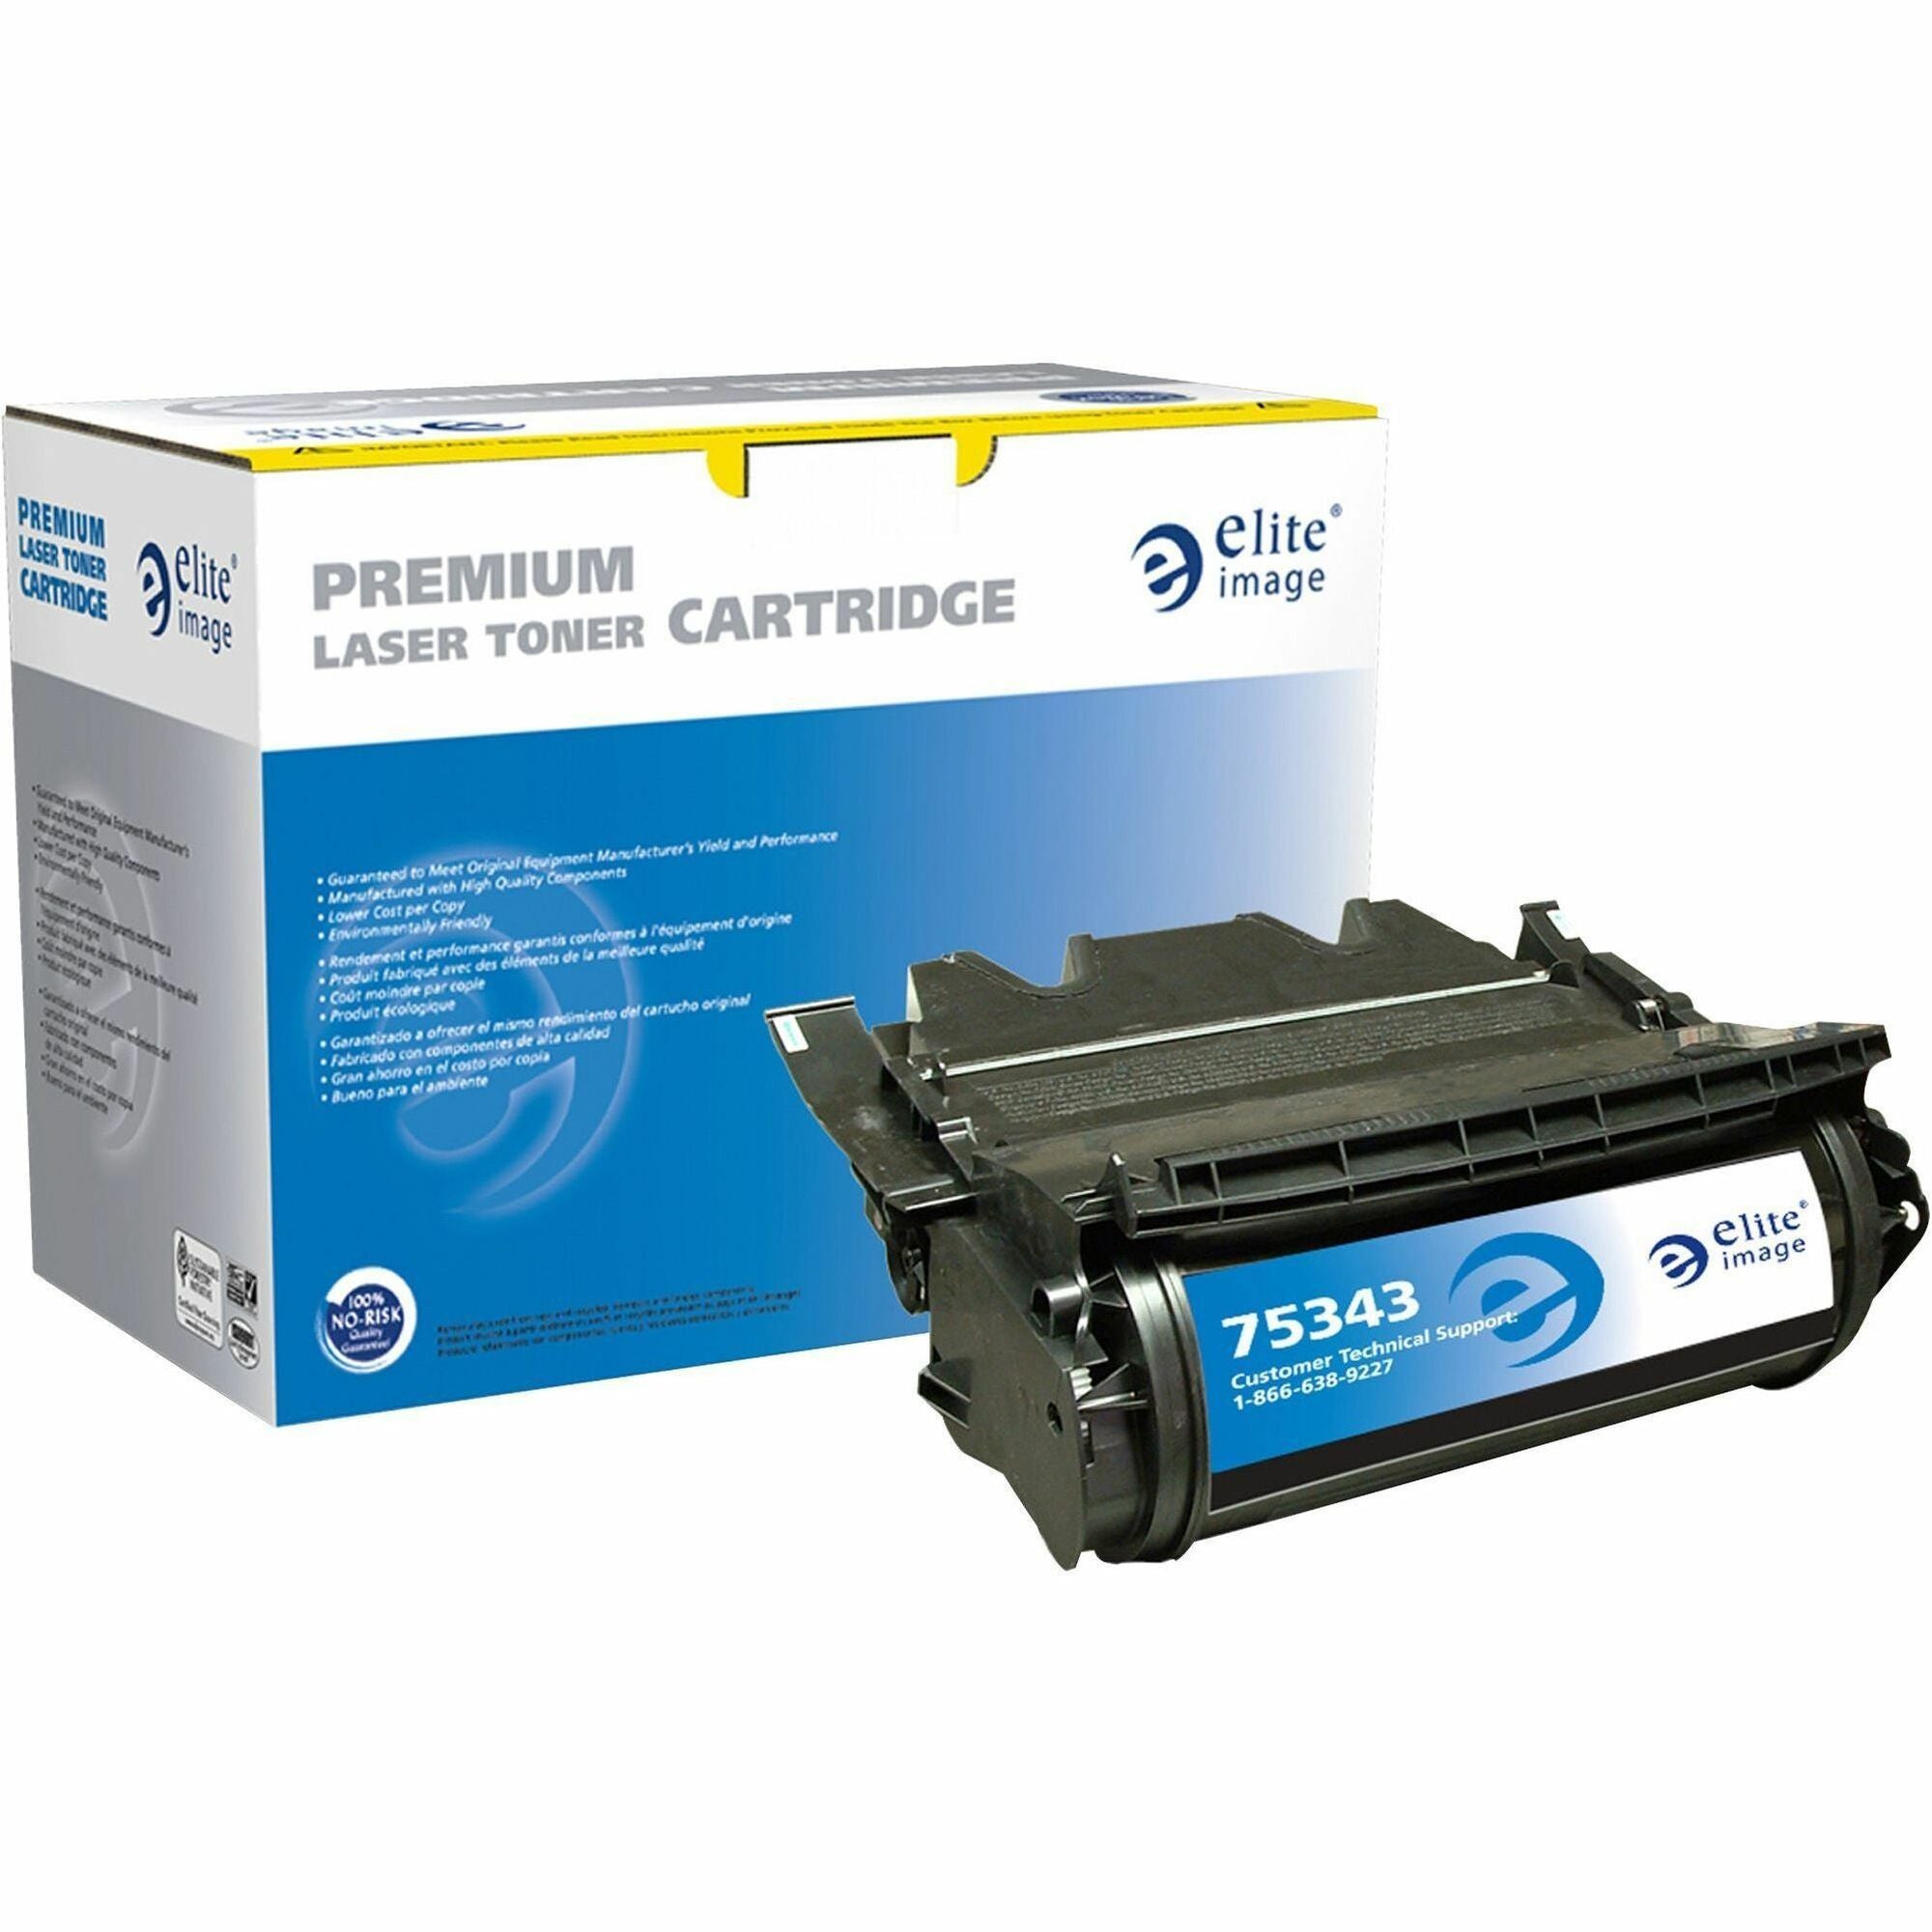 Elite Image Remanufactured Toner Cartridge - Alternative for Dell (341-2916) - Laser - 20000 Pages - Black - 1 Each - 